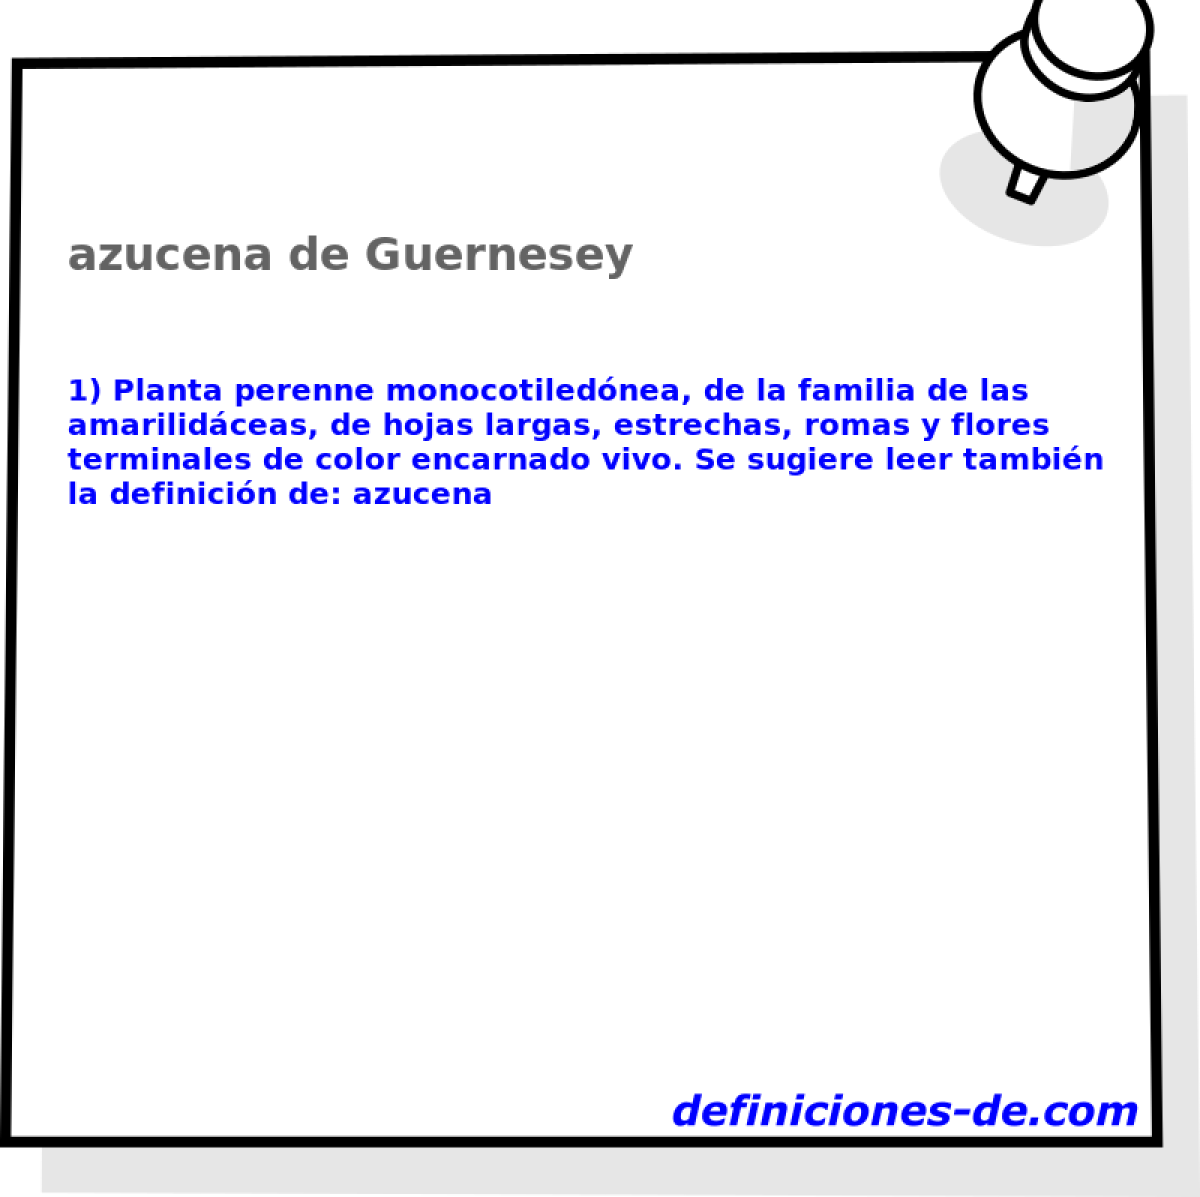 azucena de Guernesey 